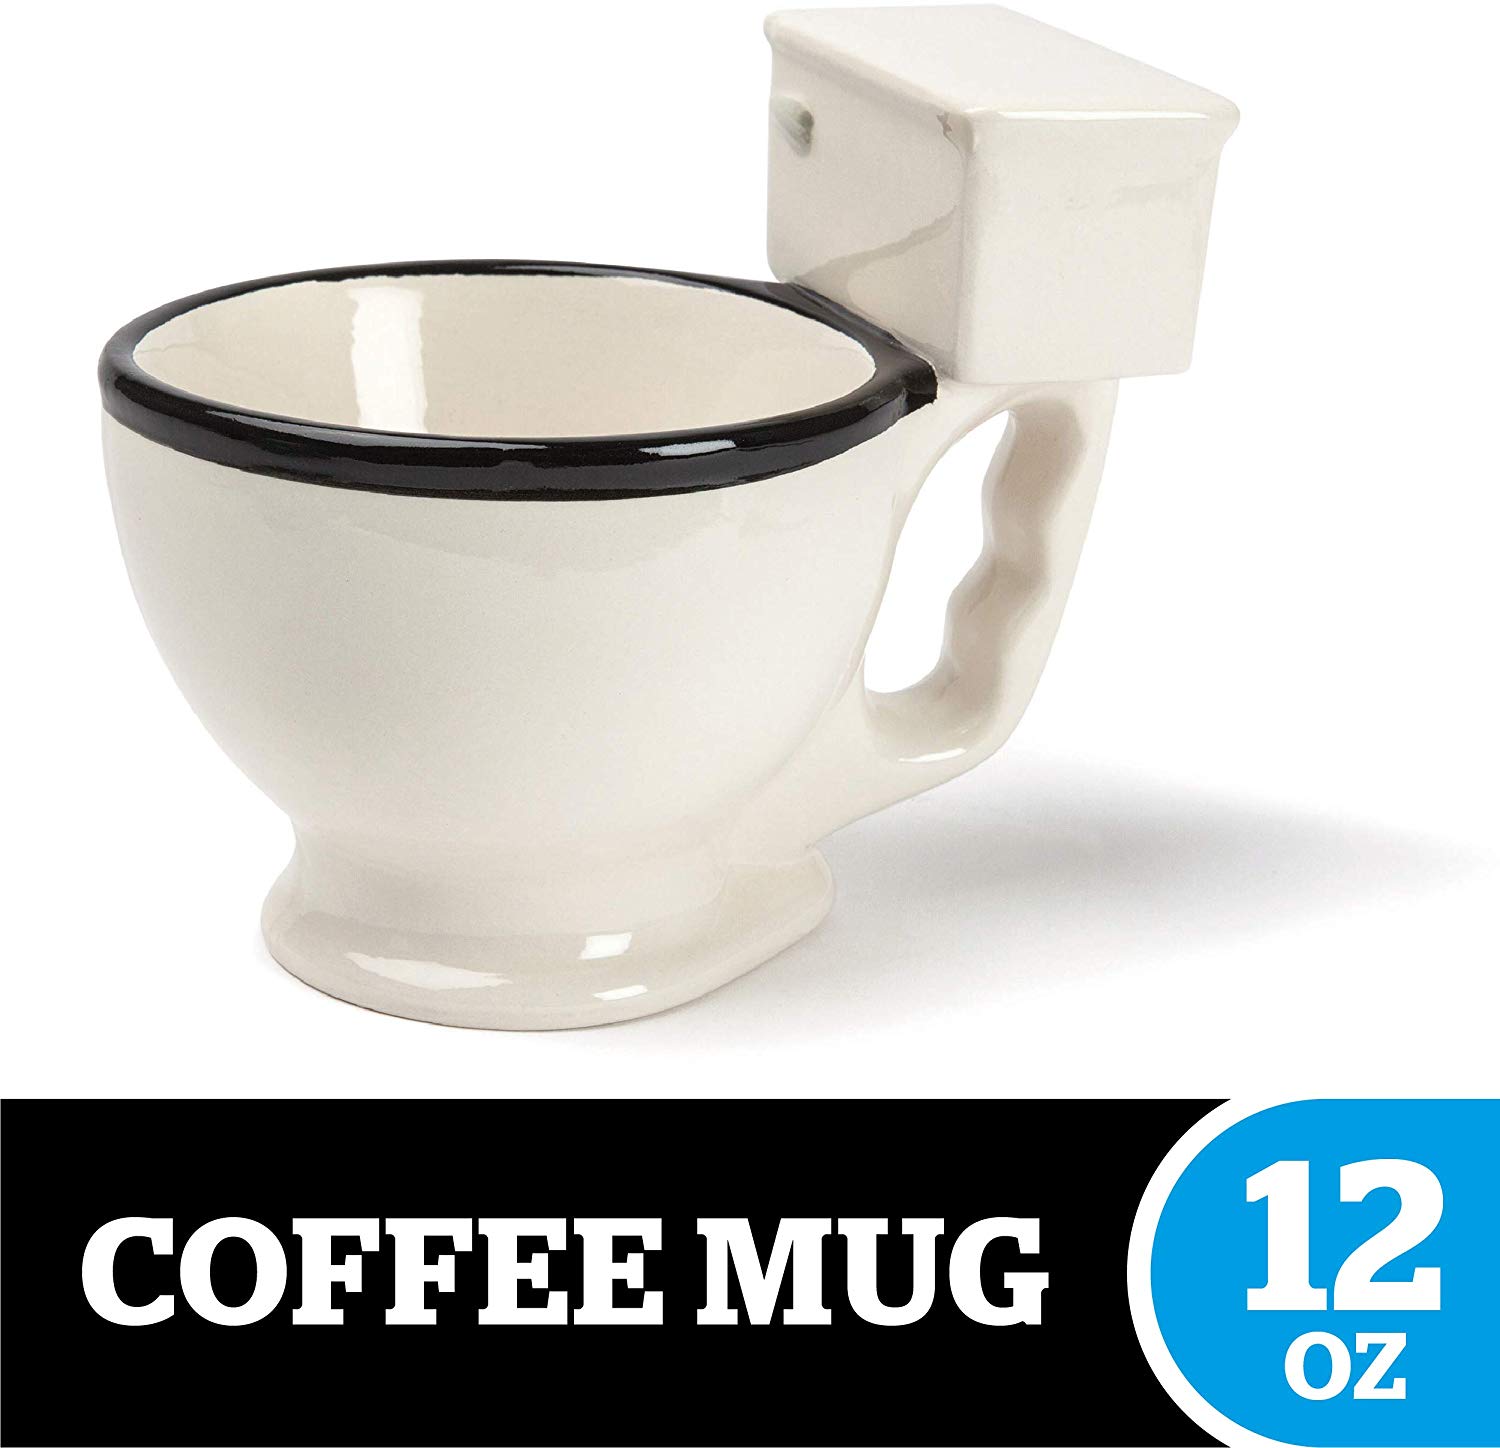 BigMouth Inc. The Original Toilet Mug